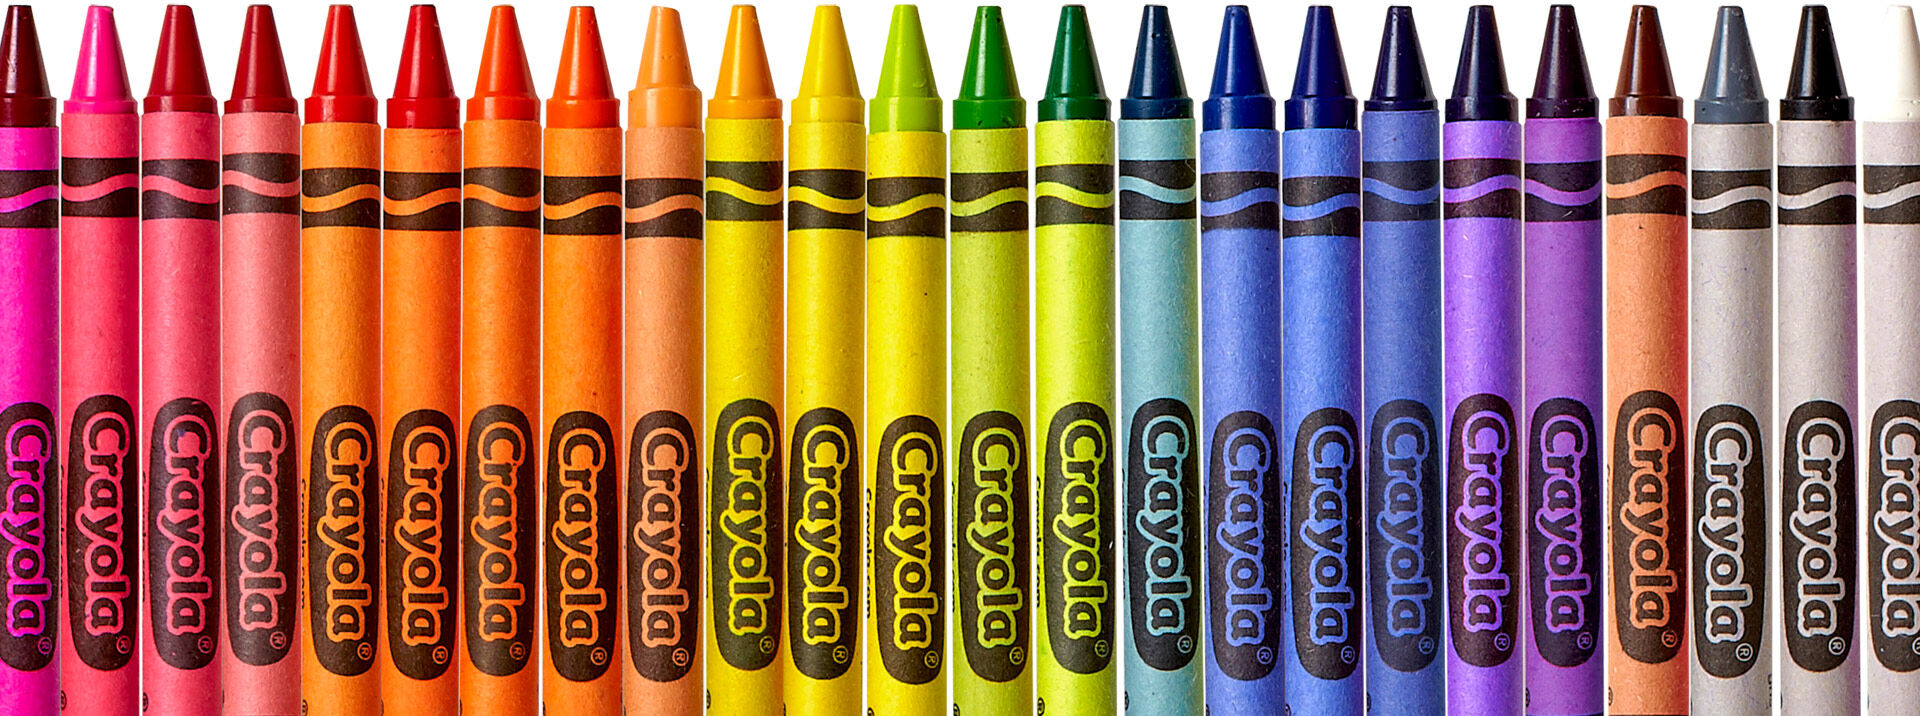 Crayola Crayons - Shop Crayon Packs & Boxes | Crayola - 1920 x 716 jpeg 421kB